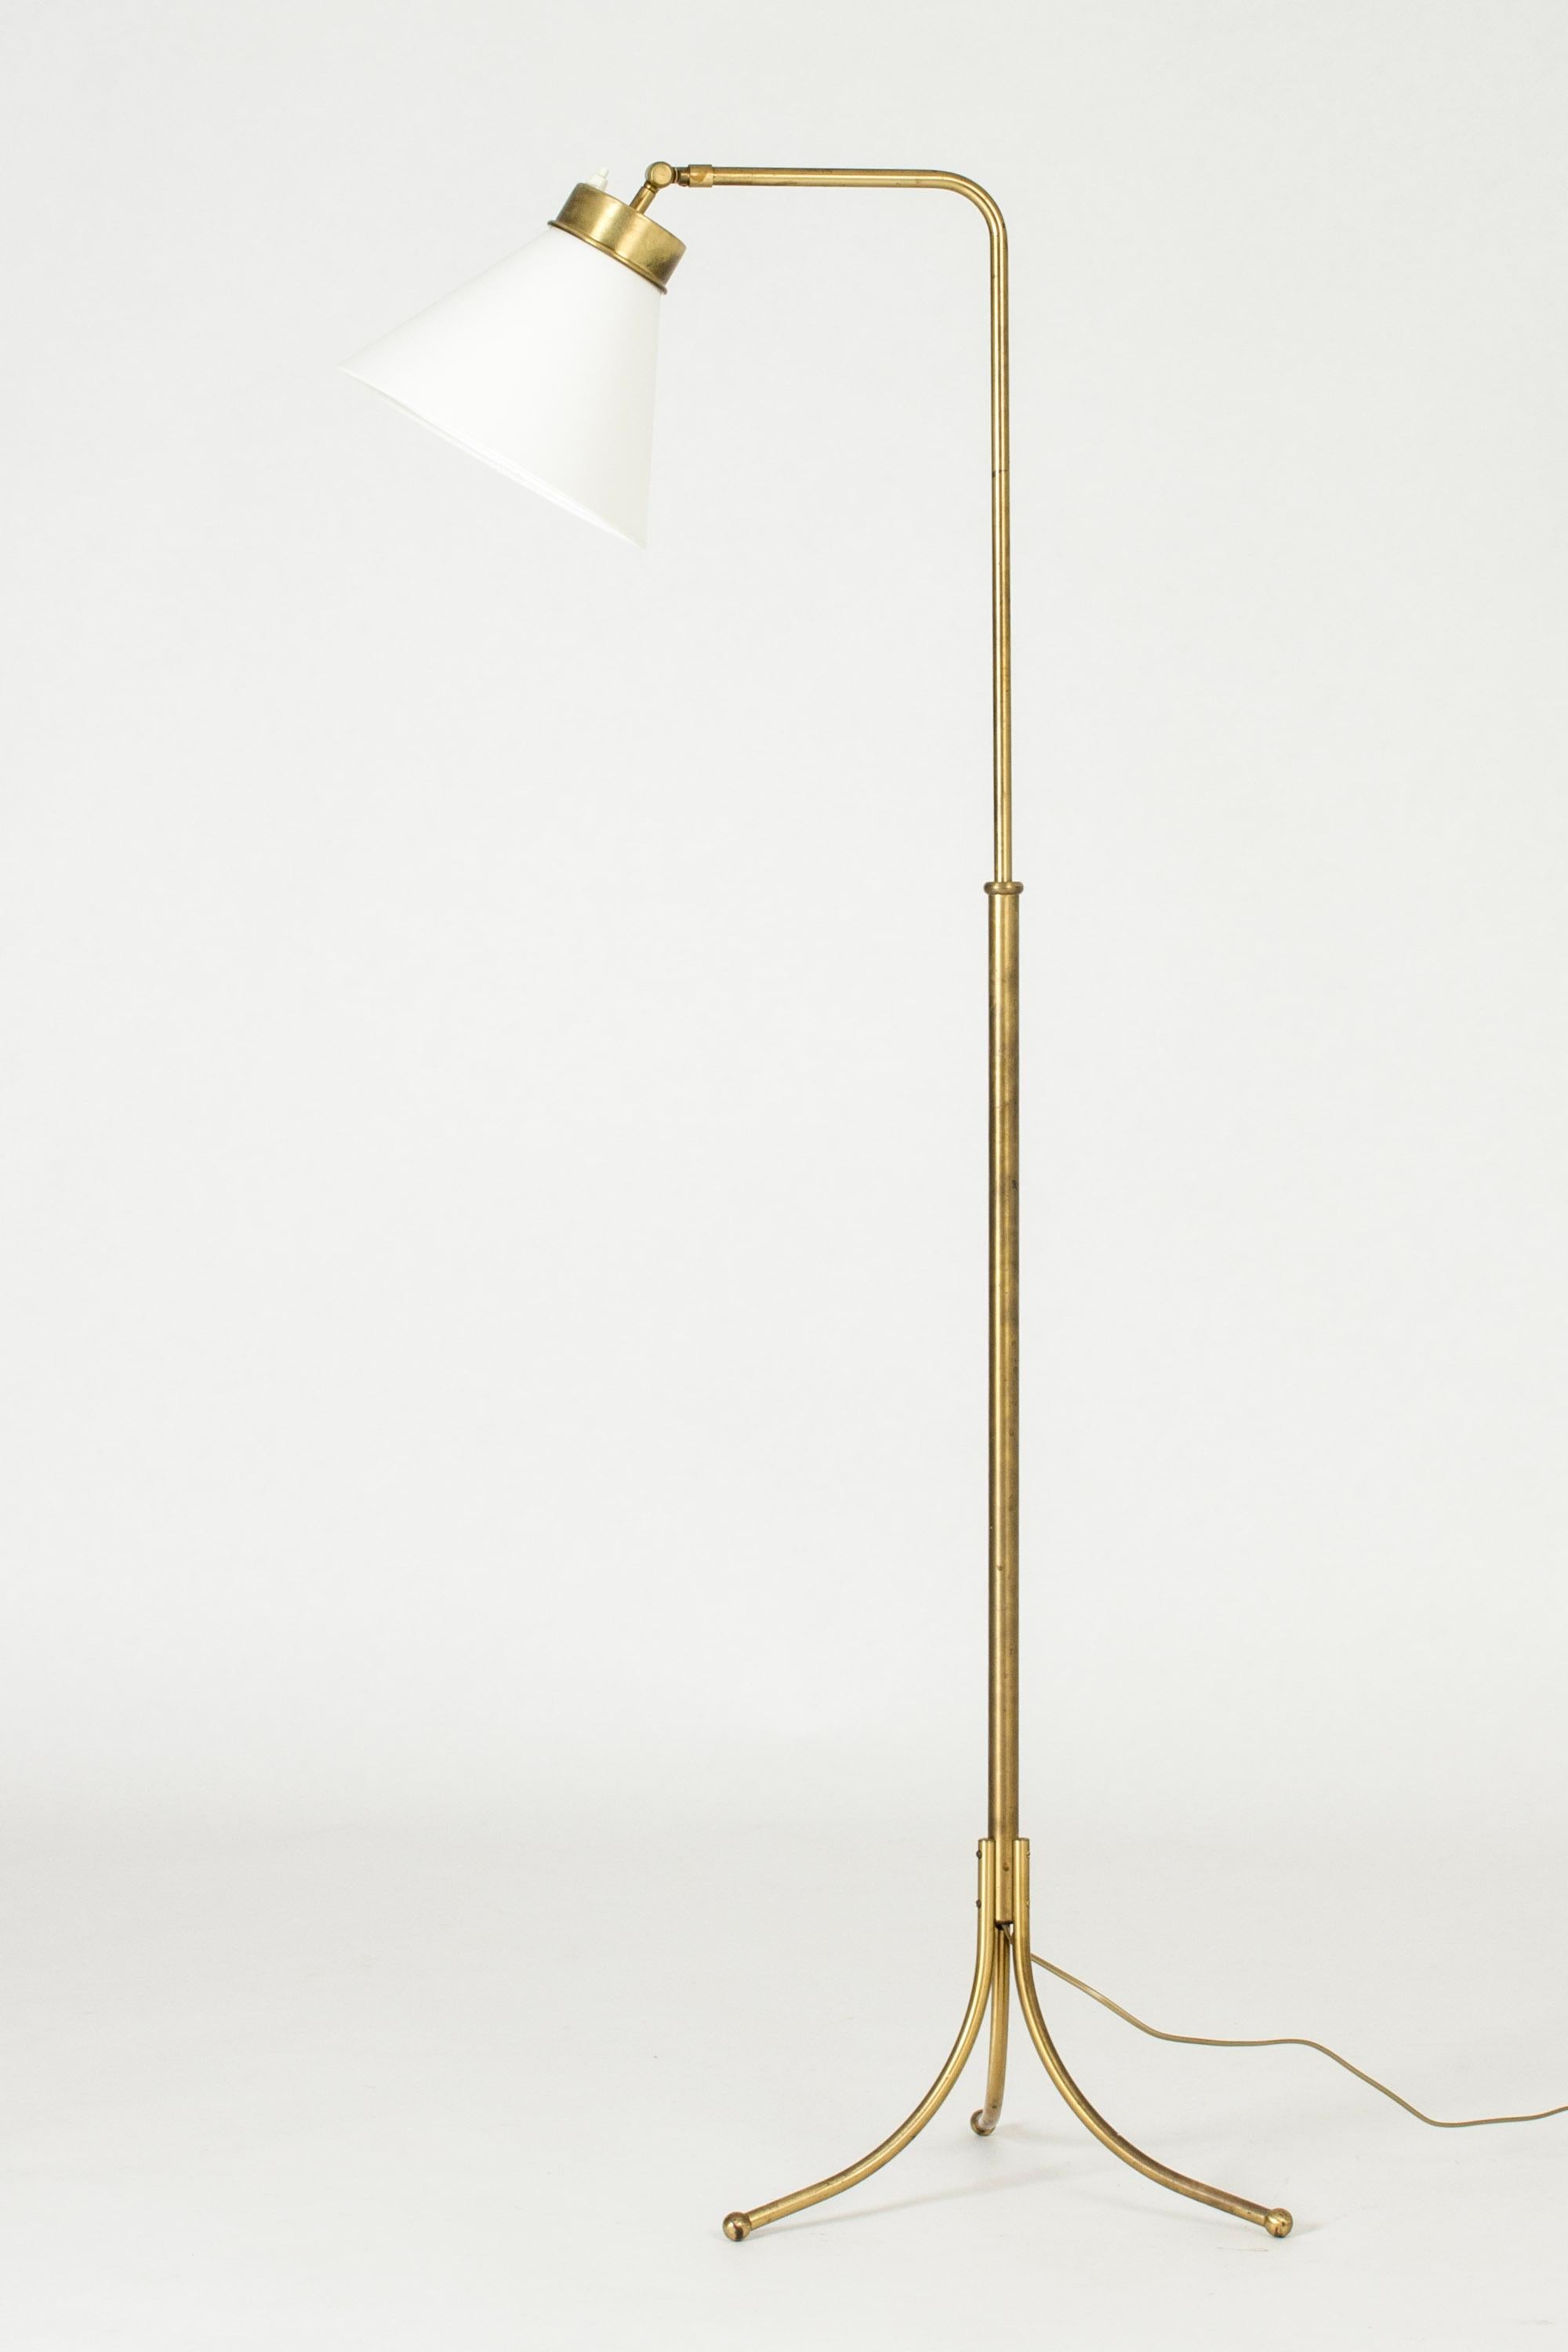 Scandinavian Modern Brass Floor Lamp model #1842 by Josef Frank for Svenskt Tenn, Sweden, 1950s For Sale